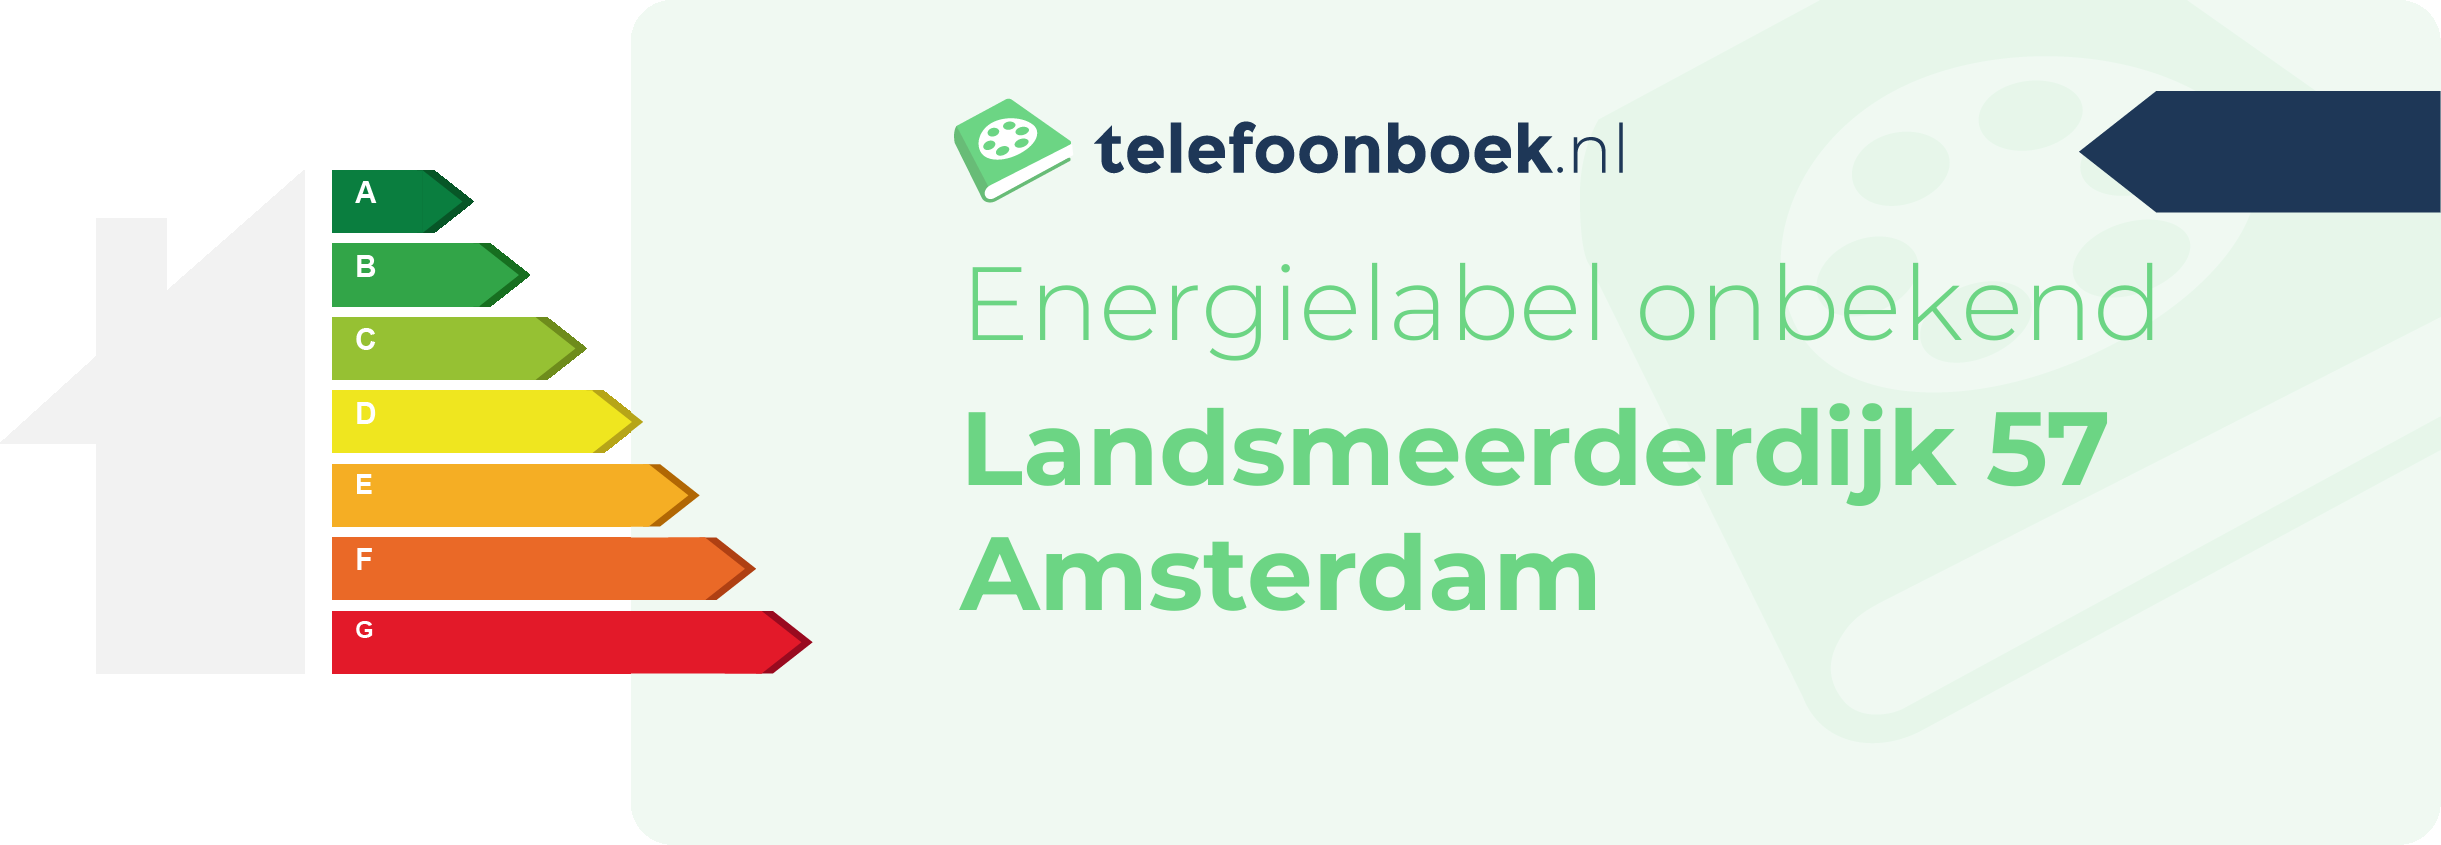 Energielabel Landsmeerderdijk 57 Amsterdam